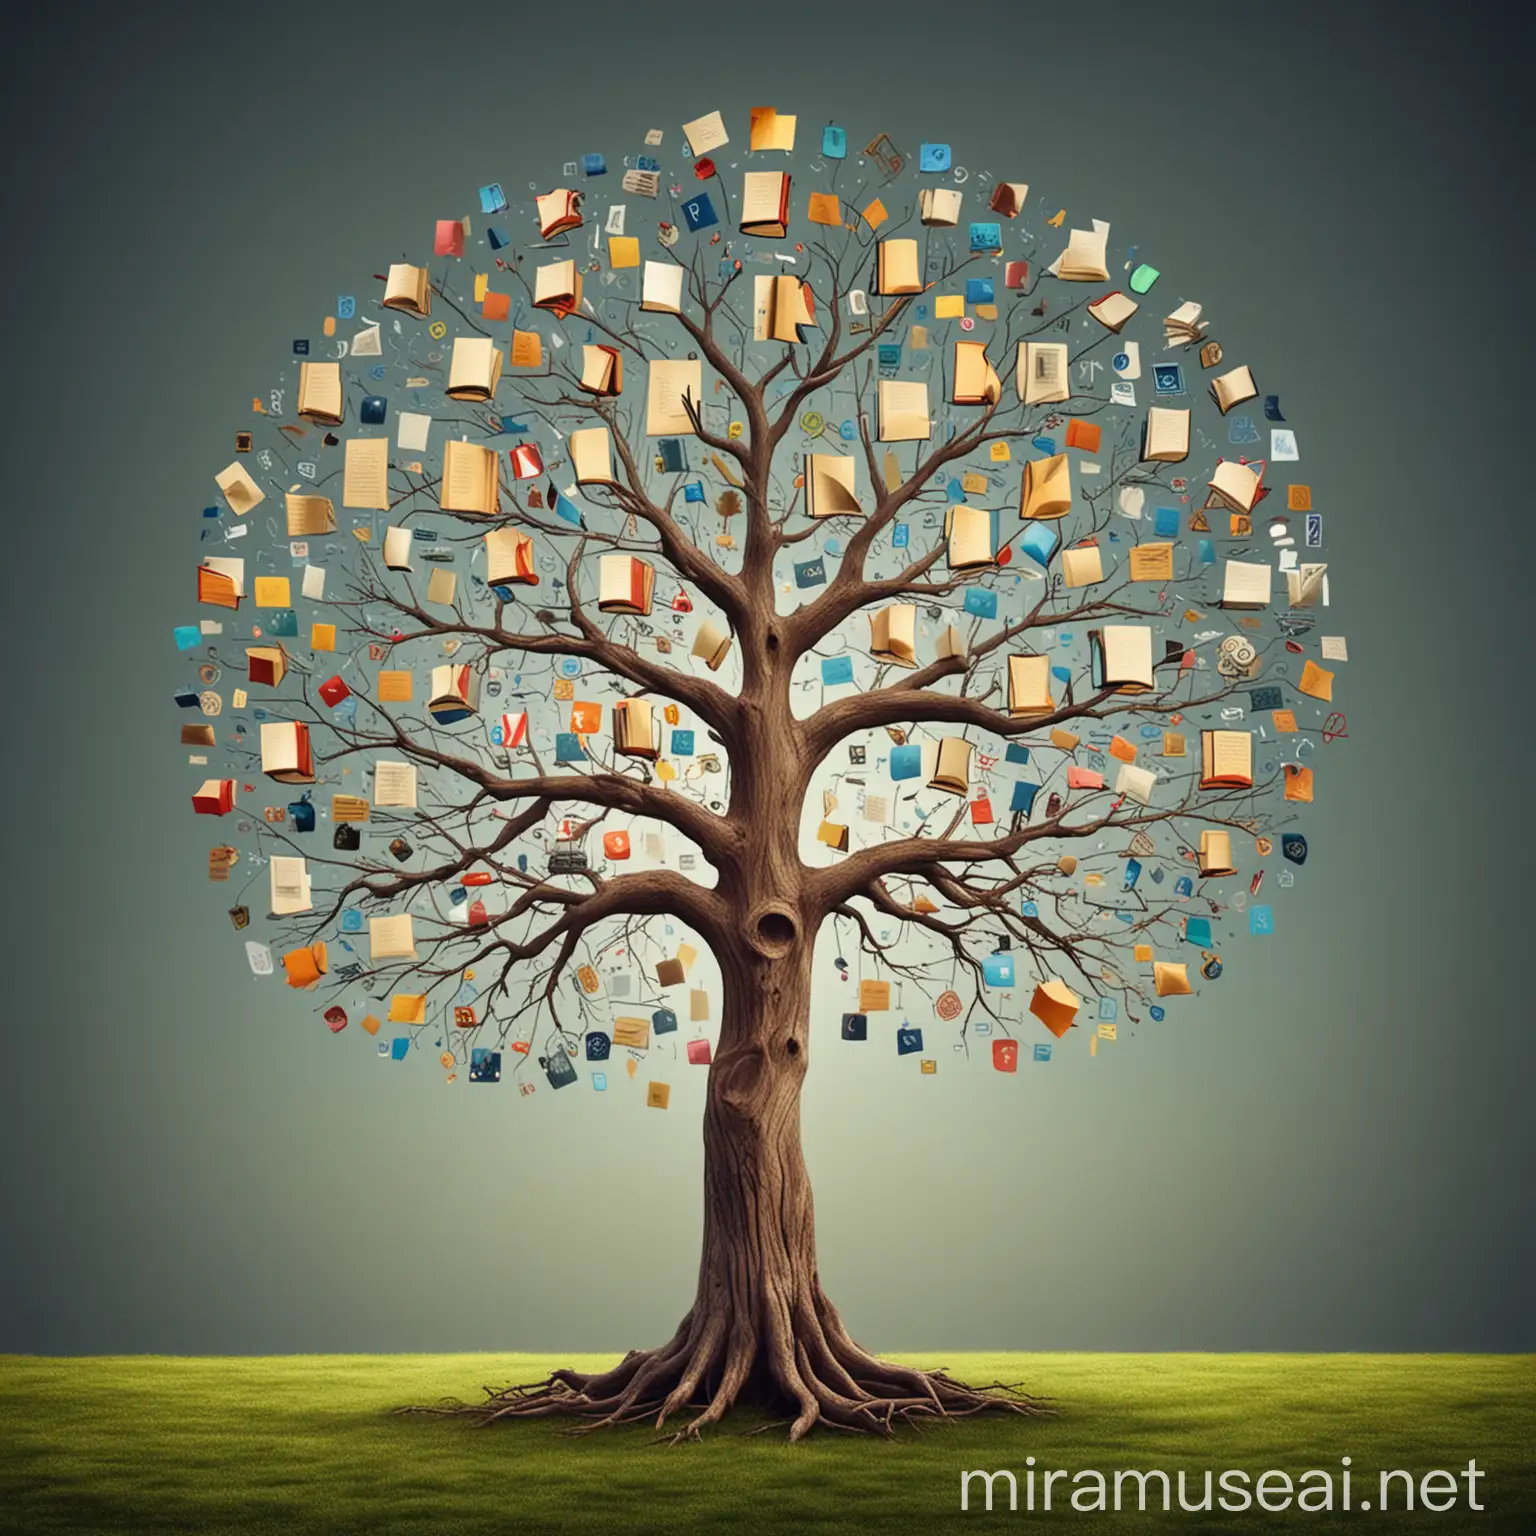 Un arbre dont les branches sont des livres ou des icônes de compétences (cognition, innovation, collaboration).